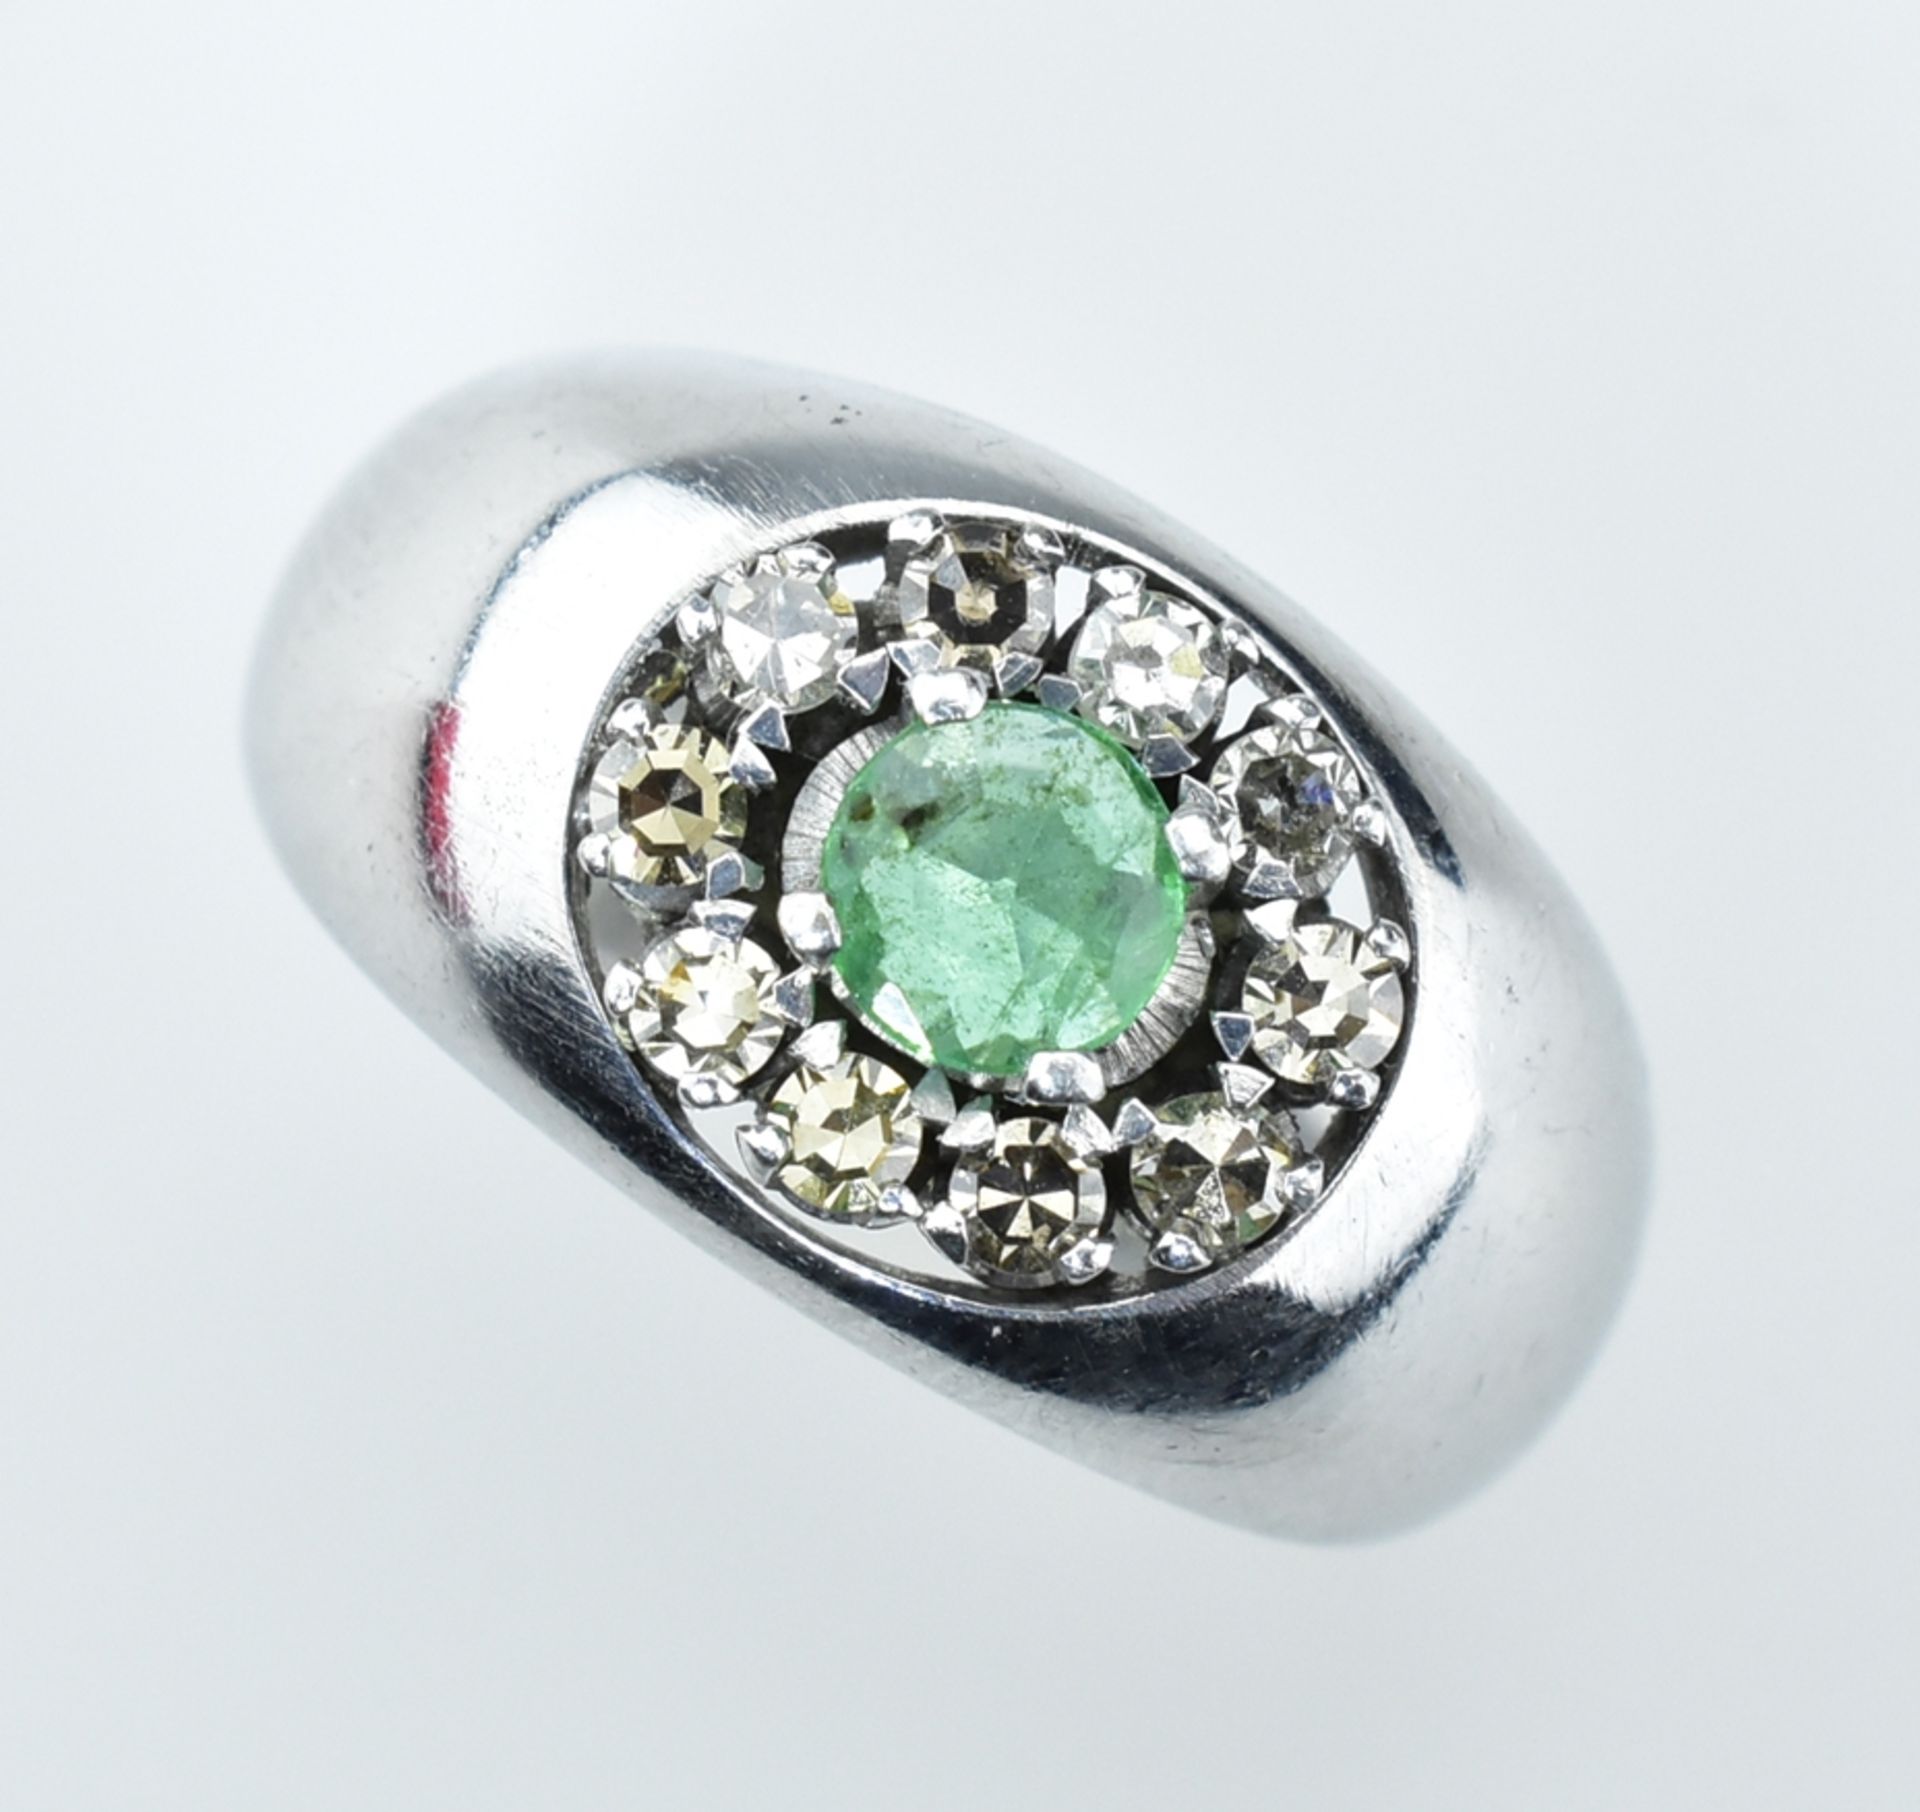 Smaragd-Diamantring. Mittig runder, facettierter Smaragd mit ca. 0,40 ct. Diamanten karmosiert. Gl